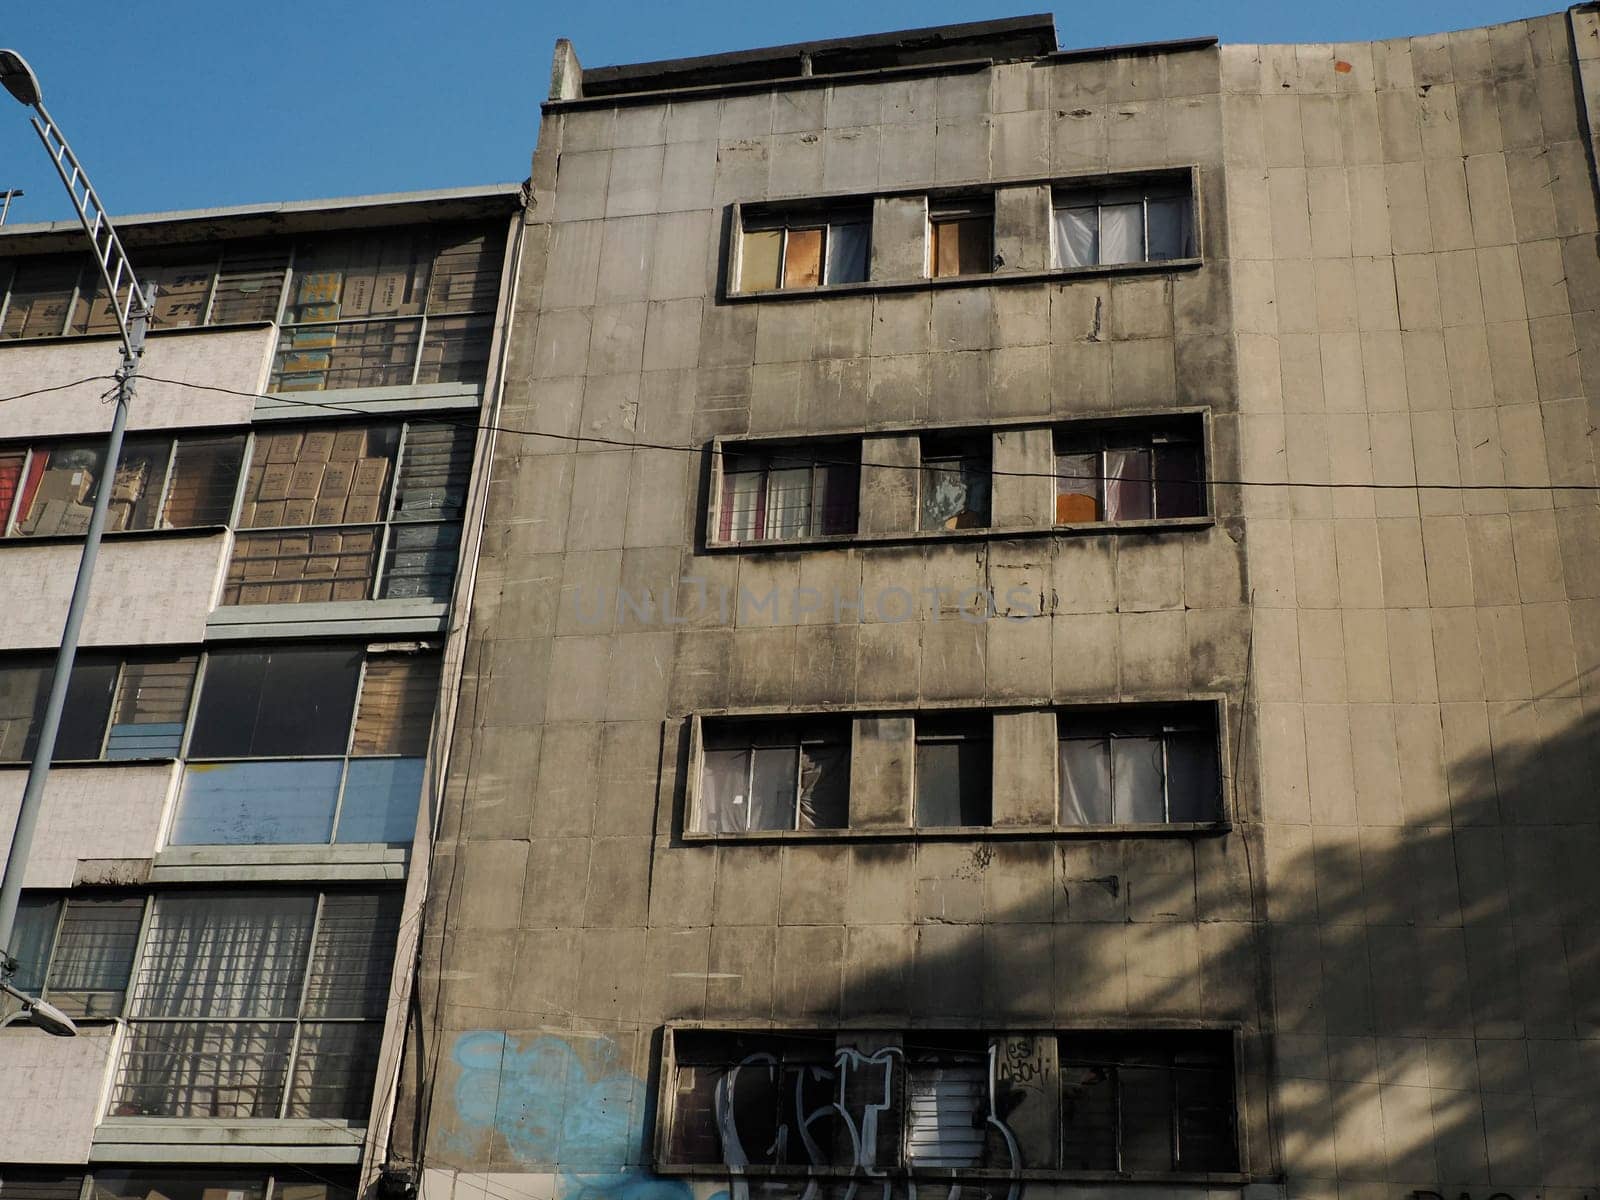 Abandoned modern building inciudad de mexico, mexico city